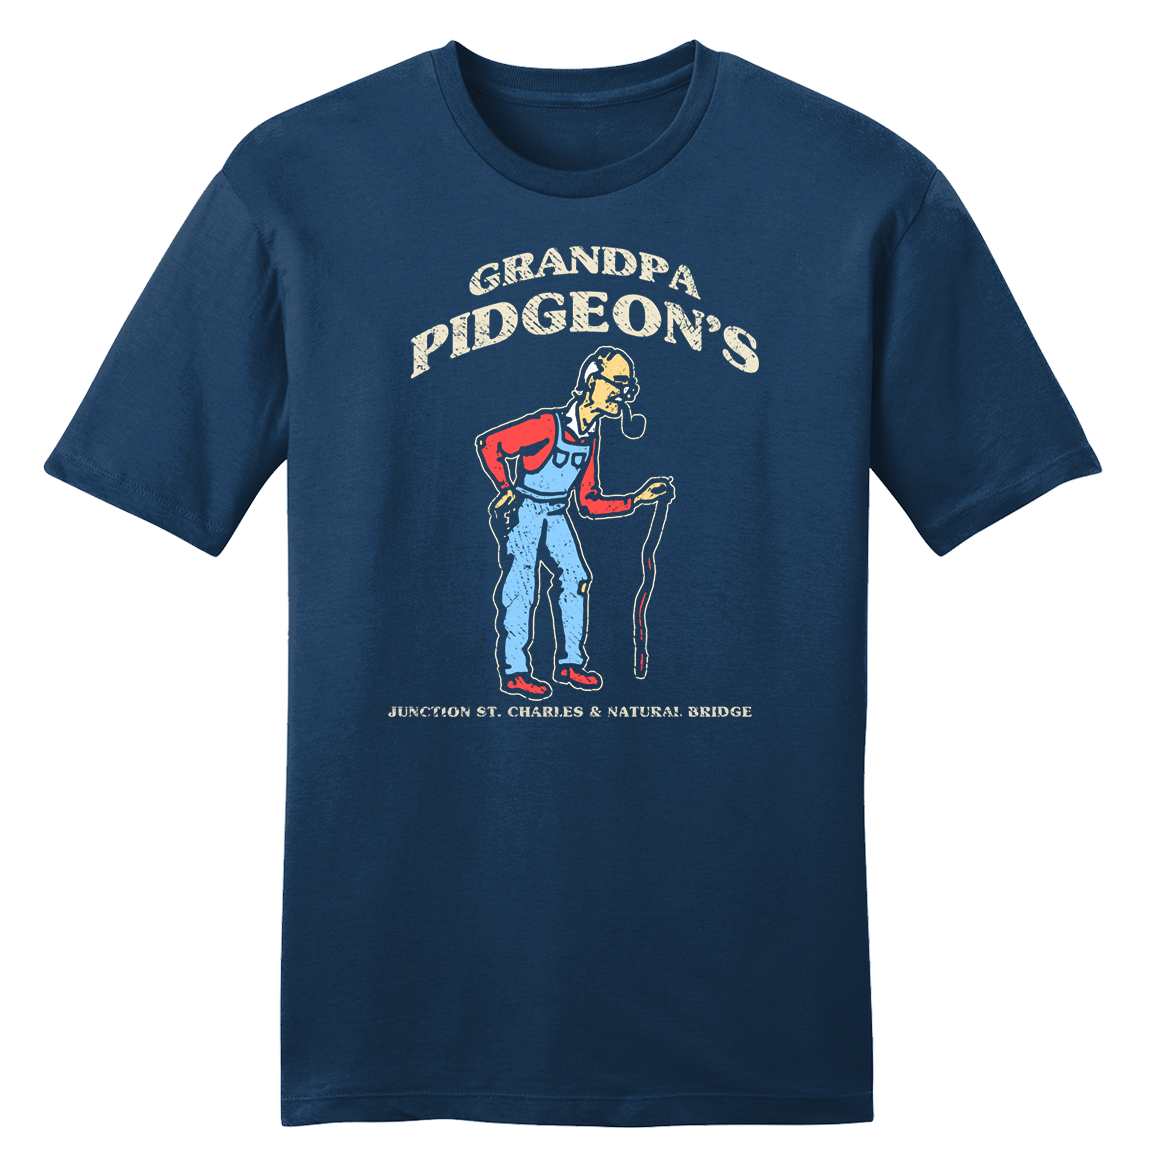 GrandPa Pidgeon's T-shirt